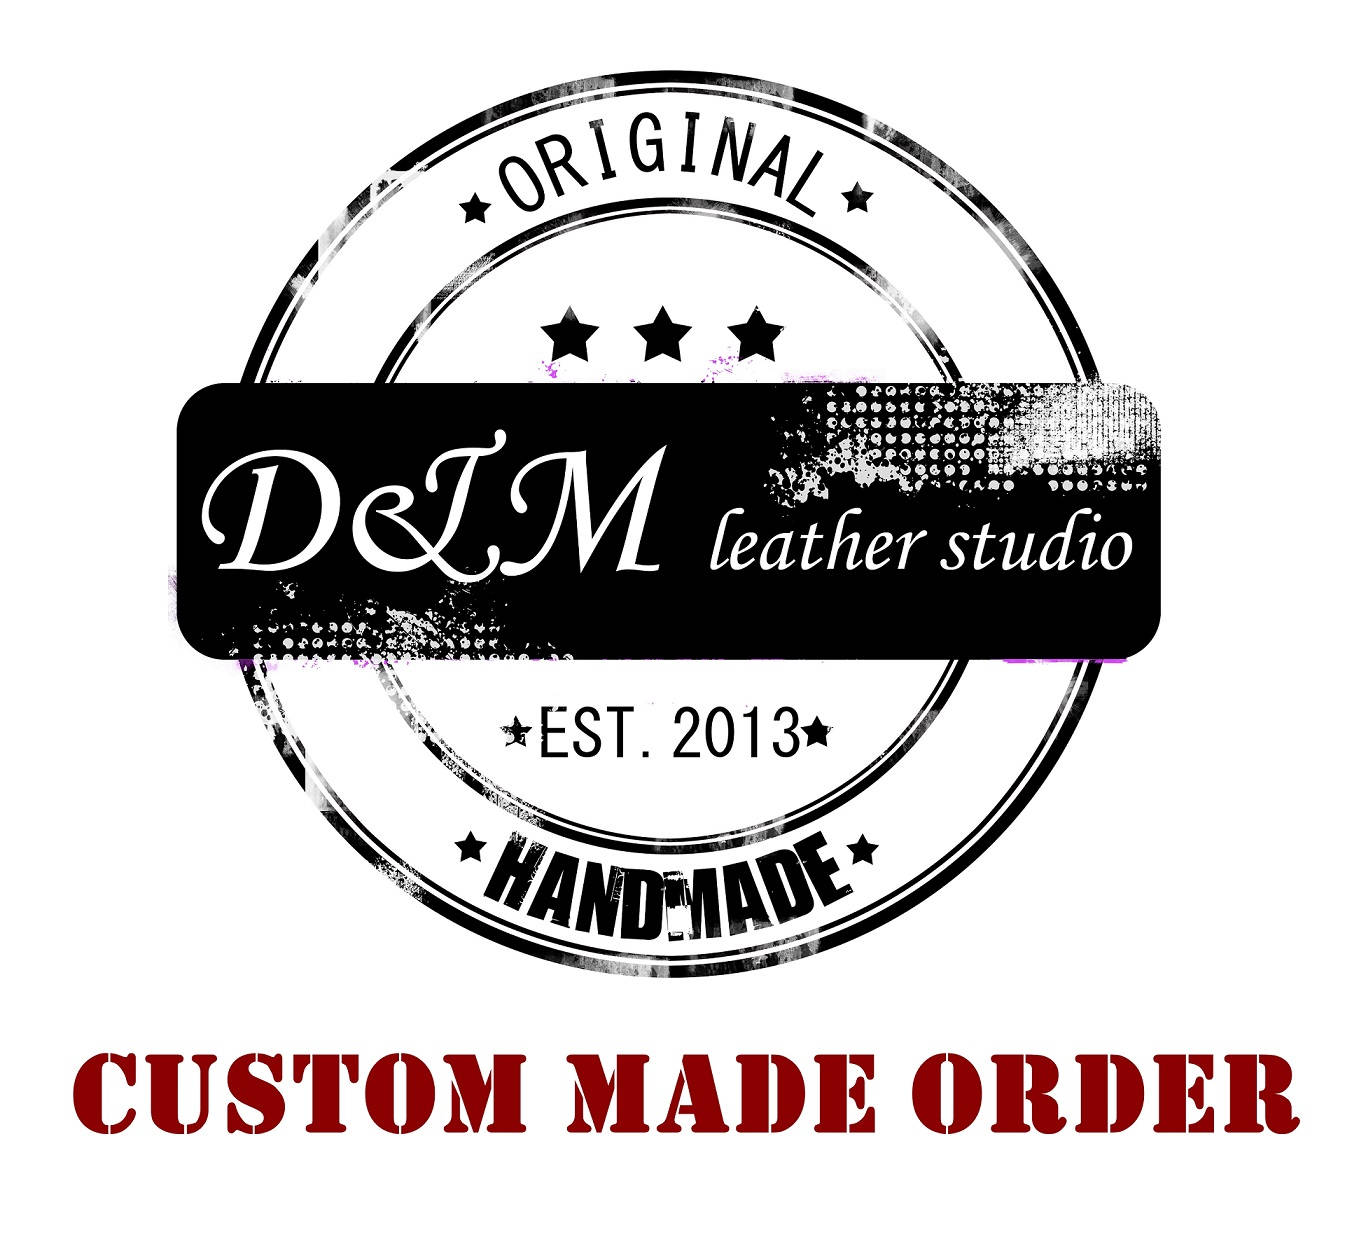 Custom Order for Laurent Deguire